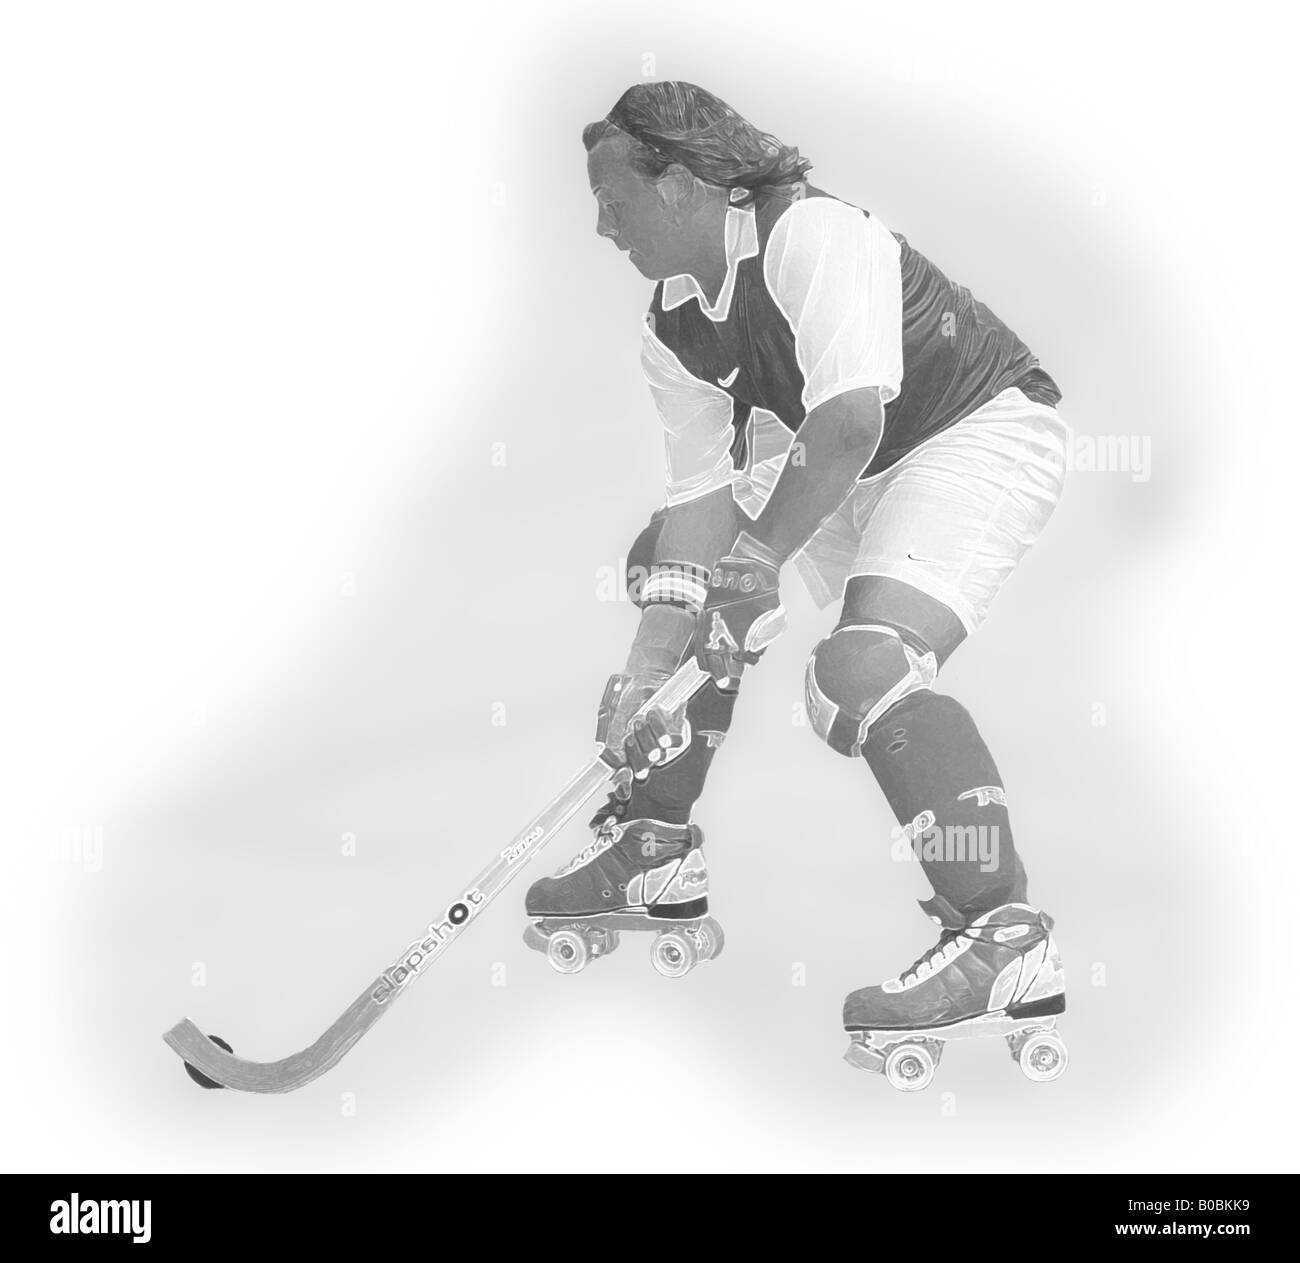 Ilustración de un jugador de hockey patines pasando el balón Fotografía de  stock - Alamy